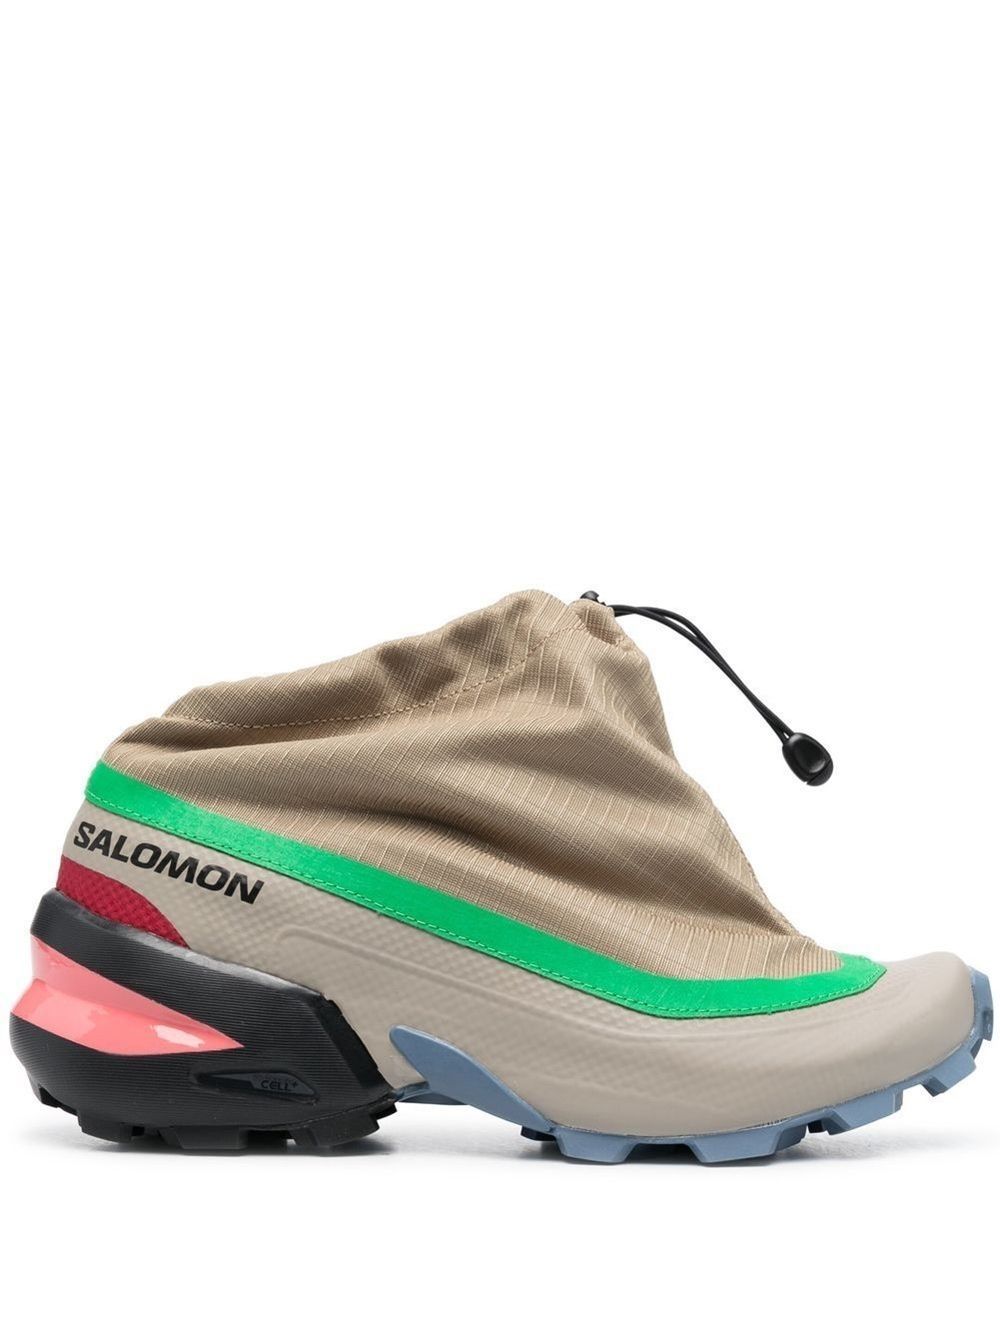 Mm6 X Salomon MM6 X SALOMON- Cross Low Sneakers